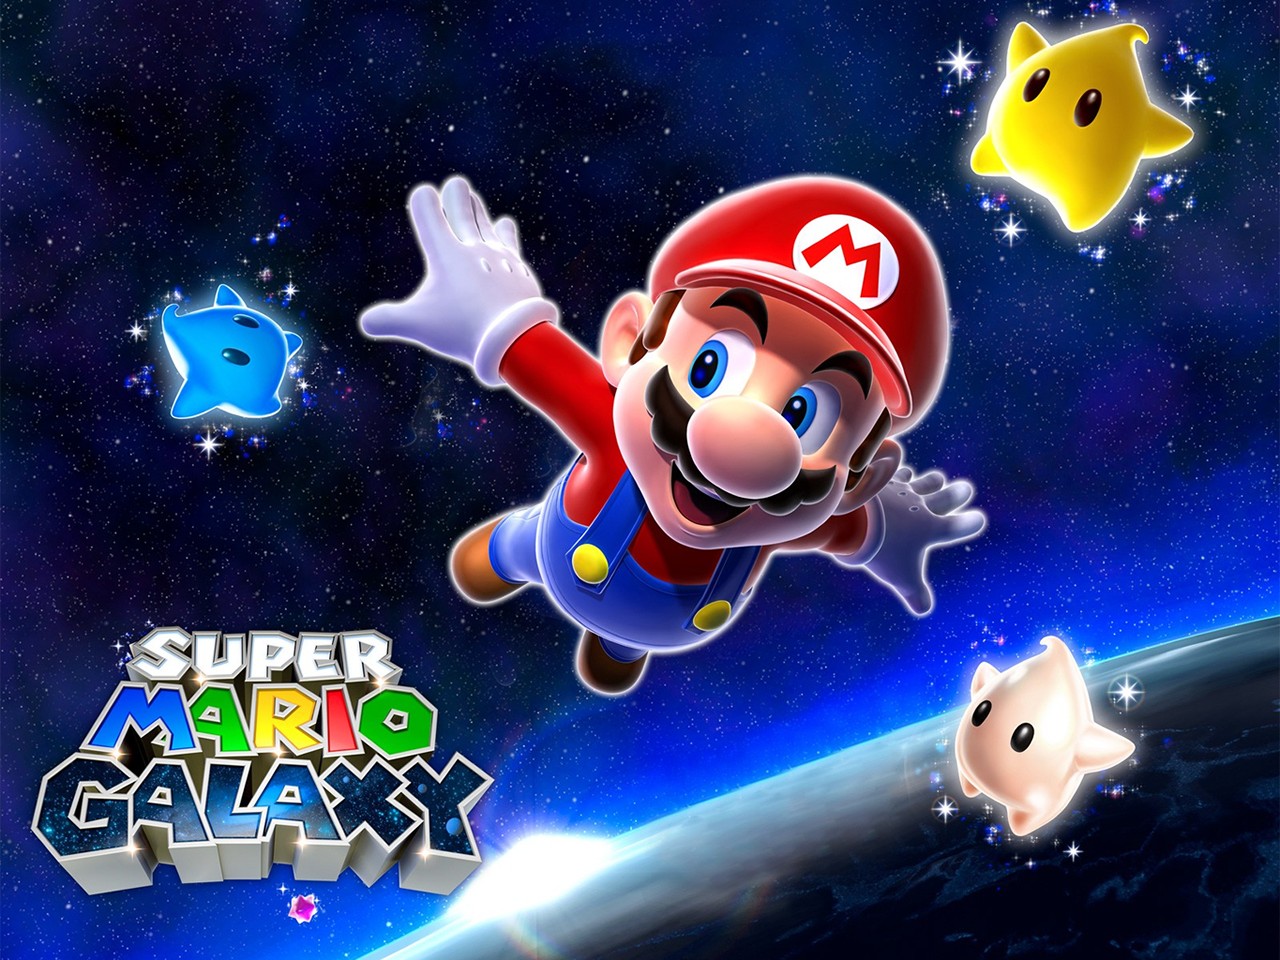 "Super Mario Galaxy" desktop wallpaper (1280 x 960 pixels)